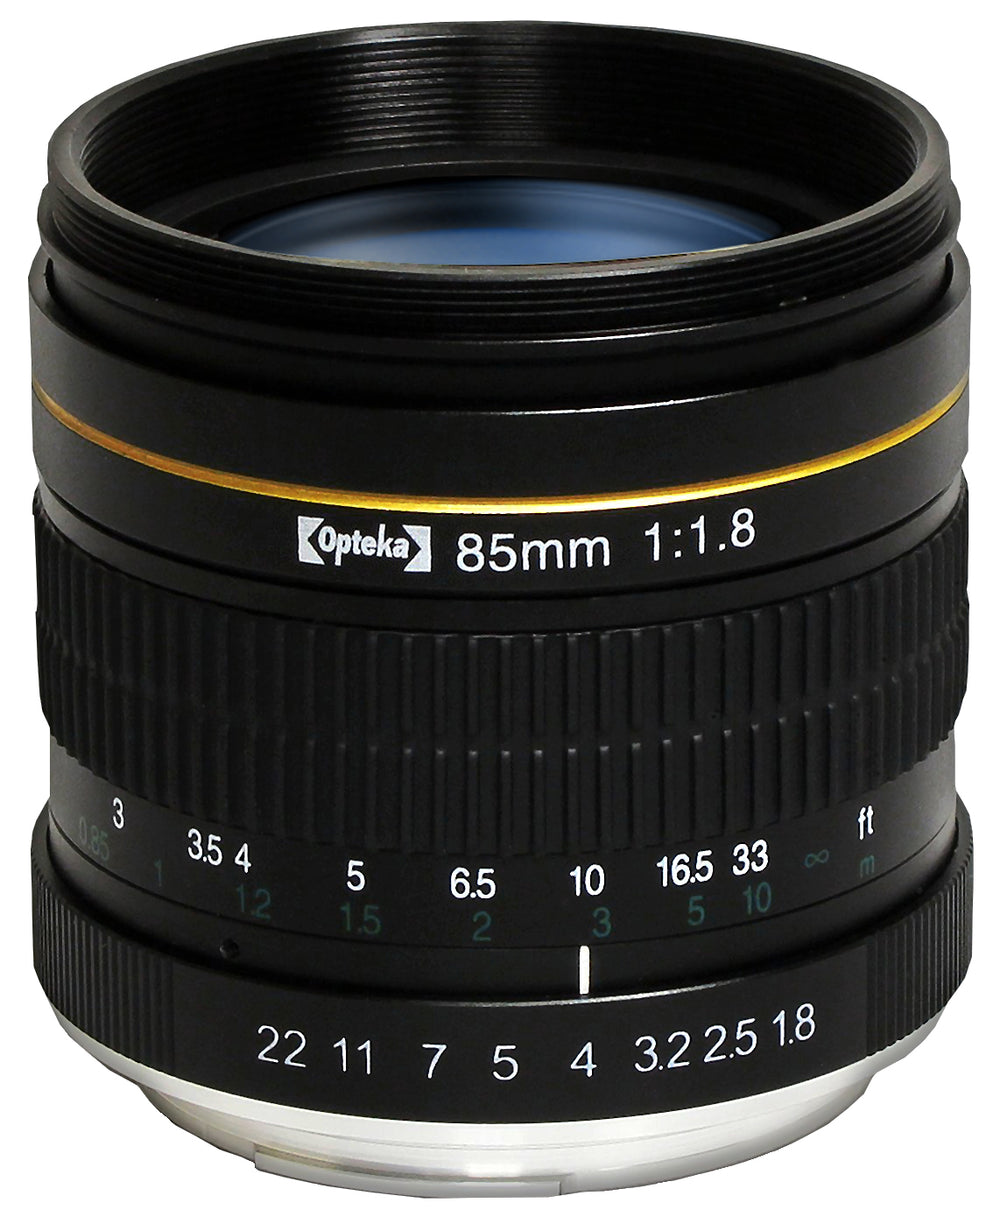 Opteka 85mm f/1.8 Aspherical Telephoto Portrait Lens for Nikon D5, D4s, D4, D3x, Df, D810, D800, D750, D610, D500, D7500, D7200, D7100, D5600, D5500, D5300, D5200, D3400, D3300 Digital SLR Cameras